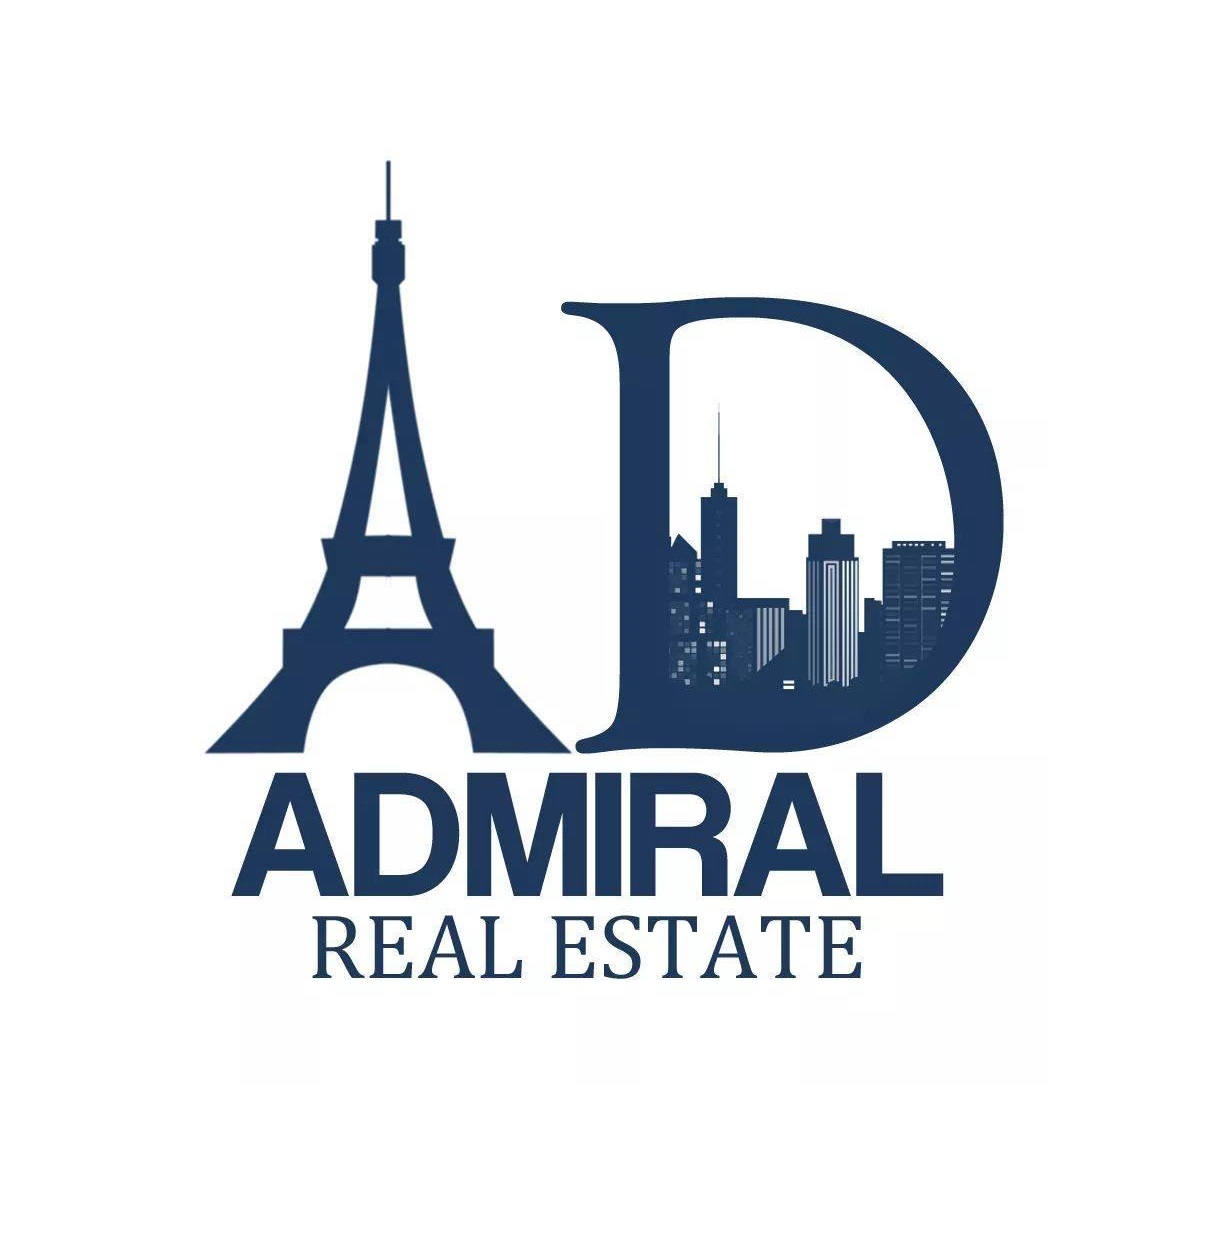 Admiral Real Estate company